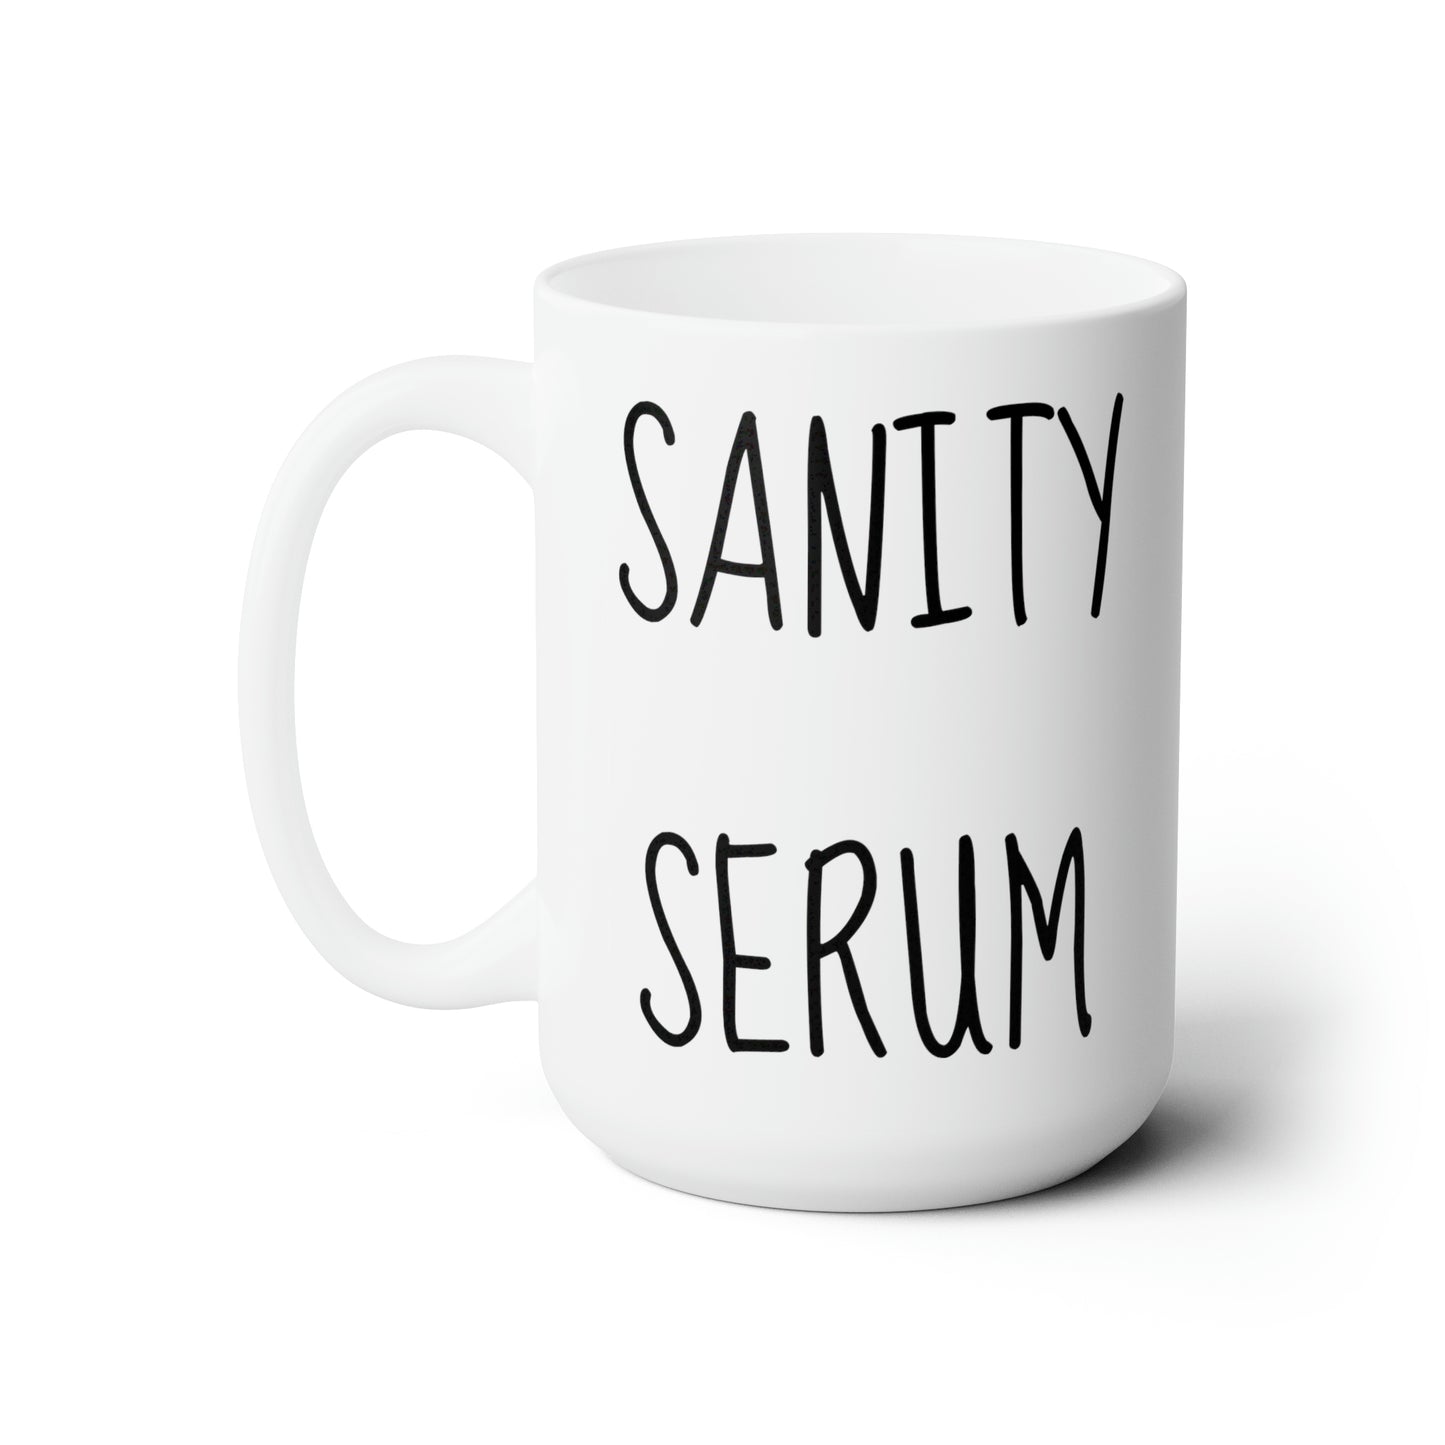 Sanity Serum Ceramic Mug 15oz